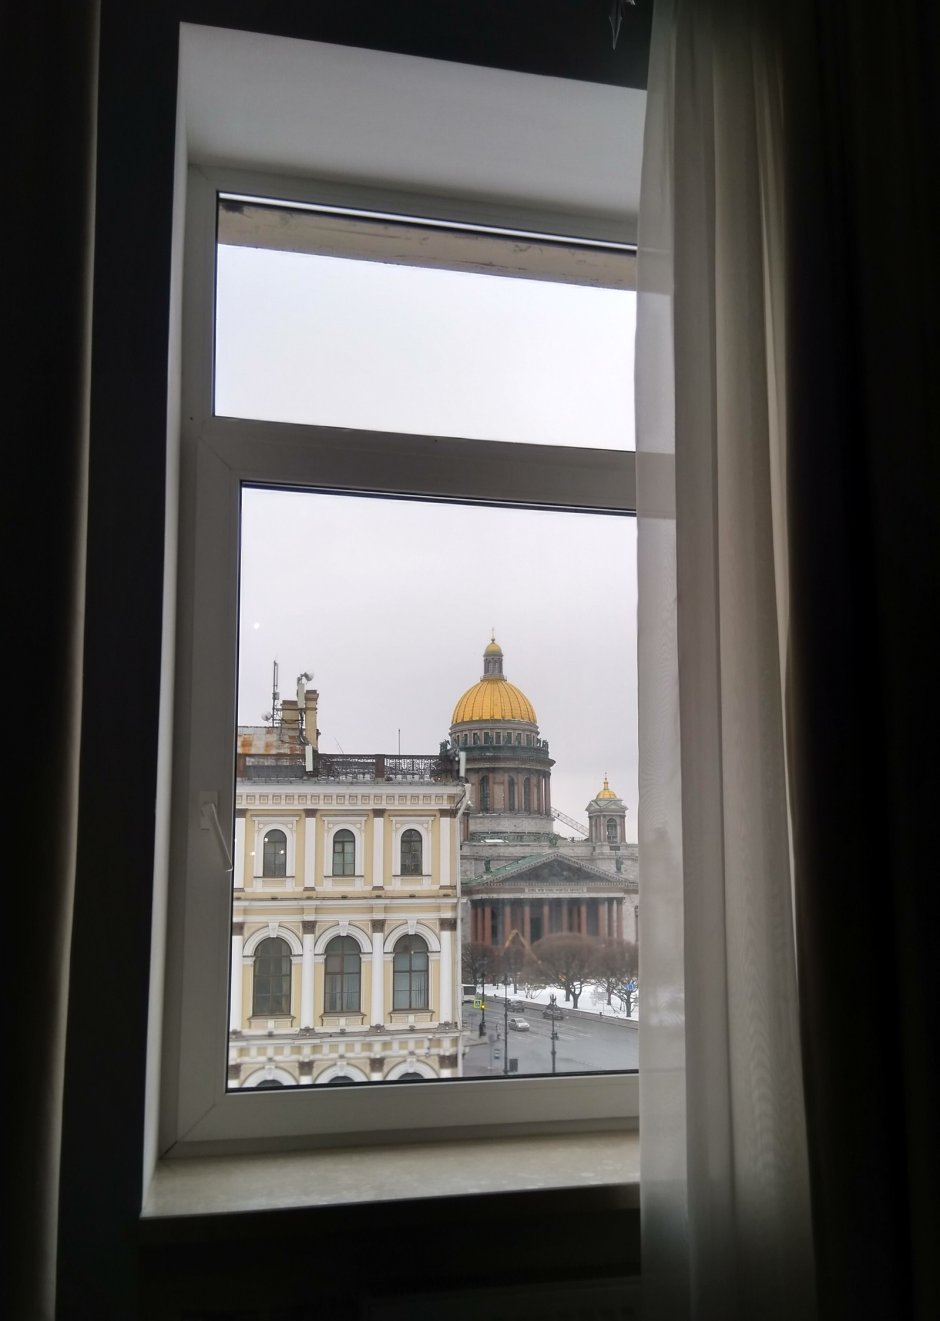 Исаакиевский собор в Санкт-Петербурге вид с окна